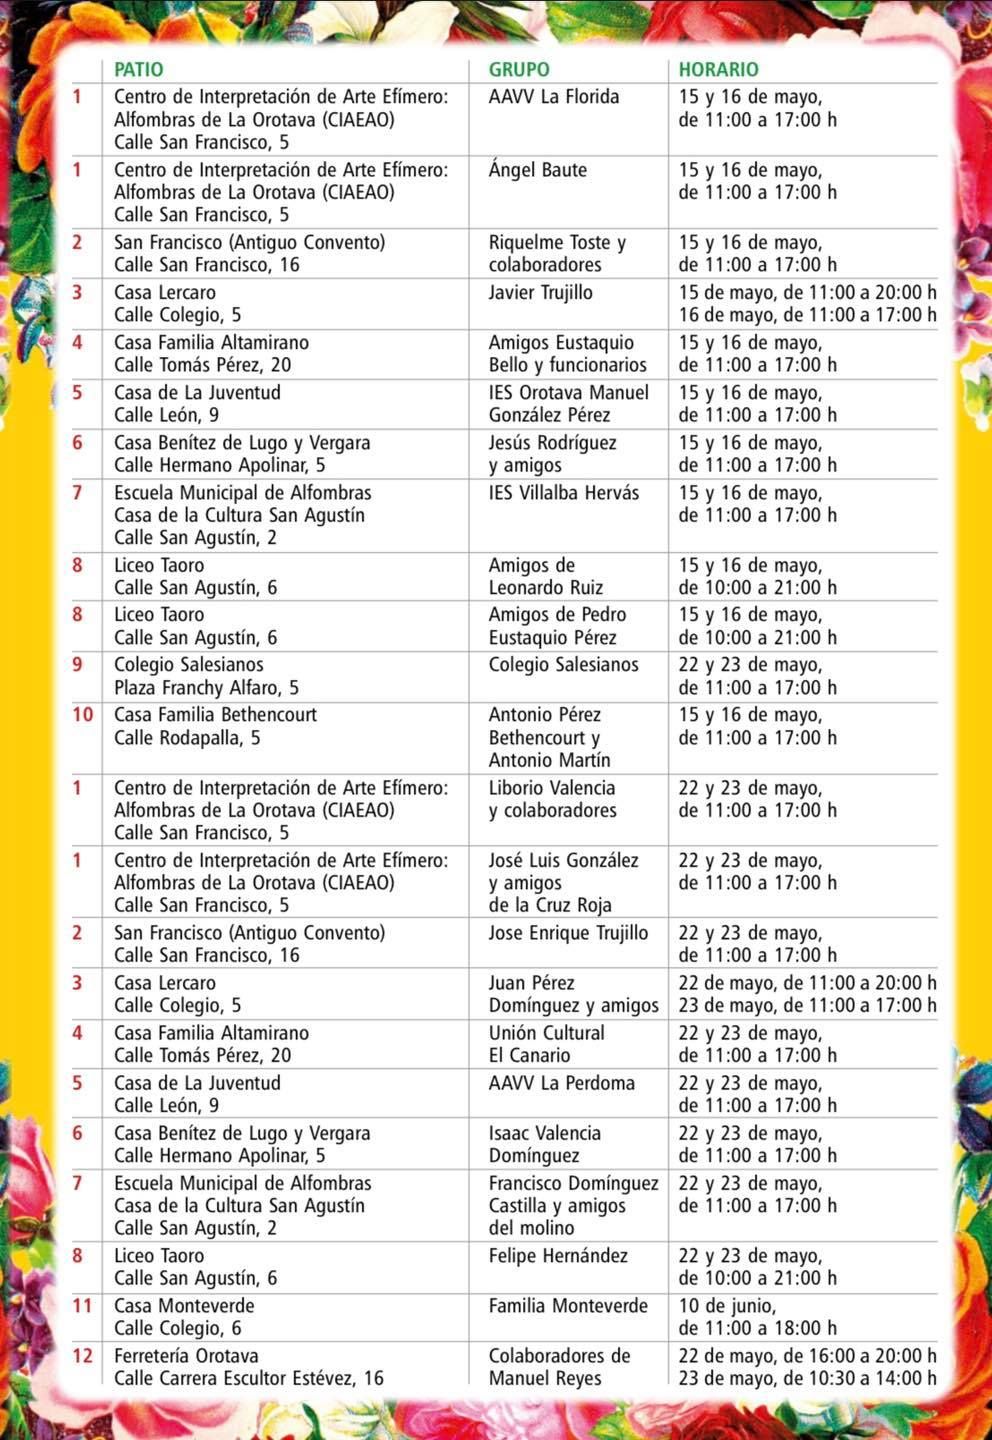 El listado de patios con fechas y horarios de visita de las alfombras de flores